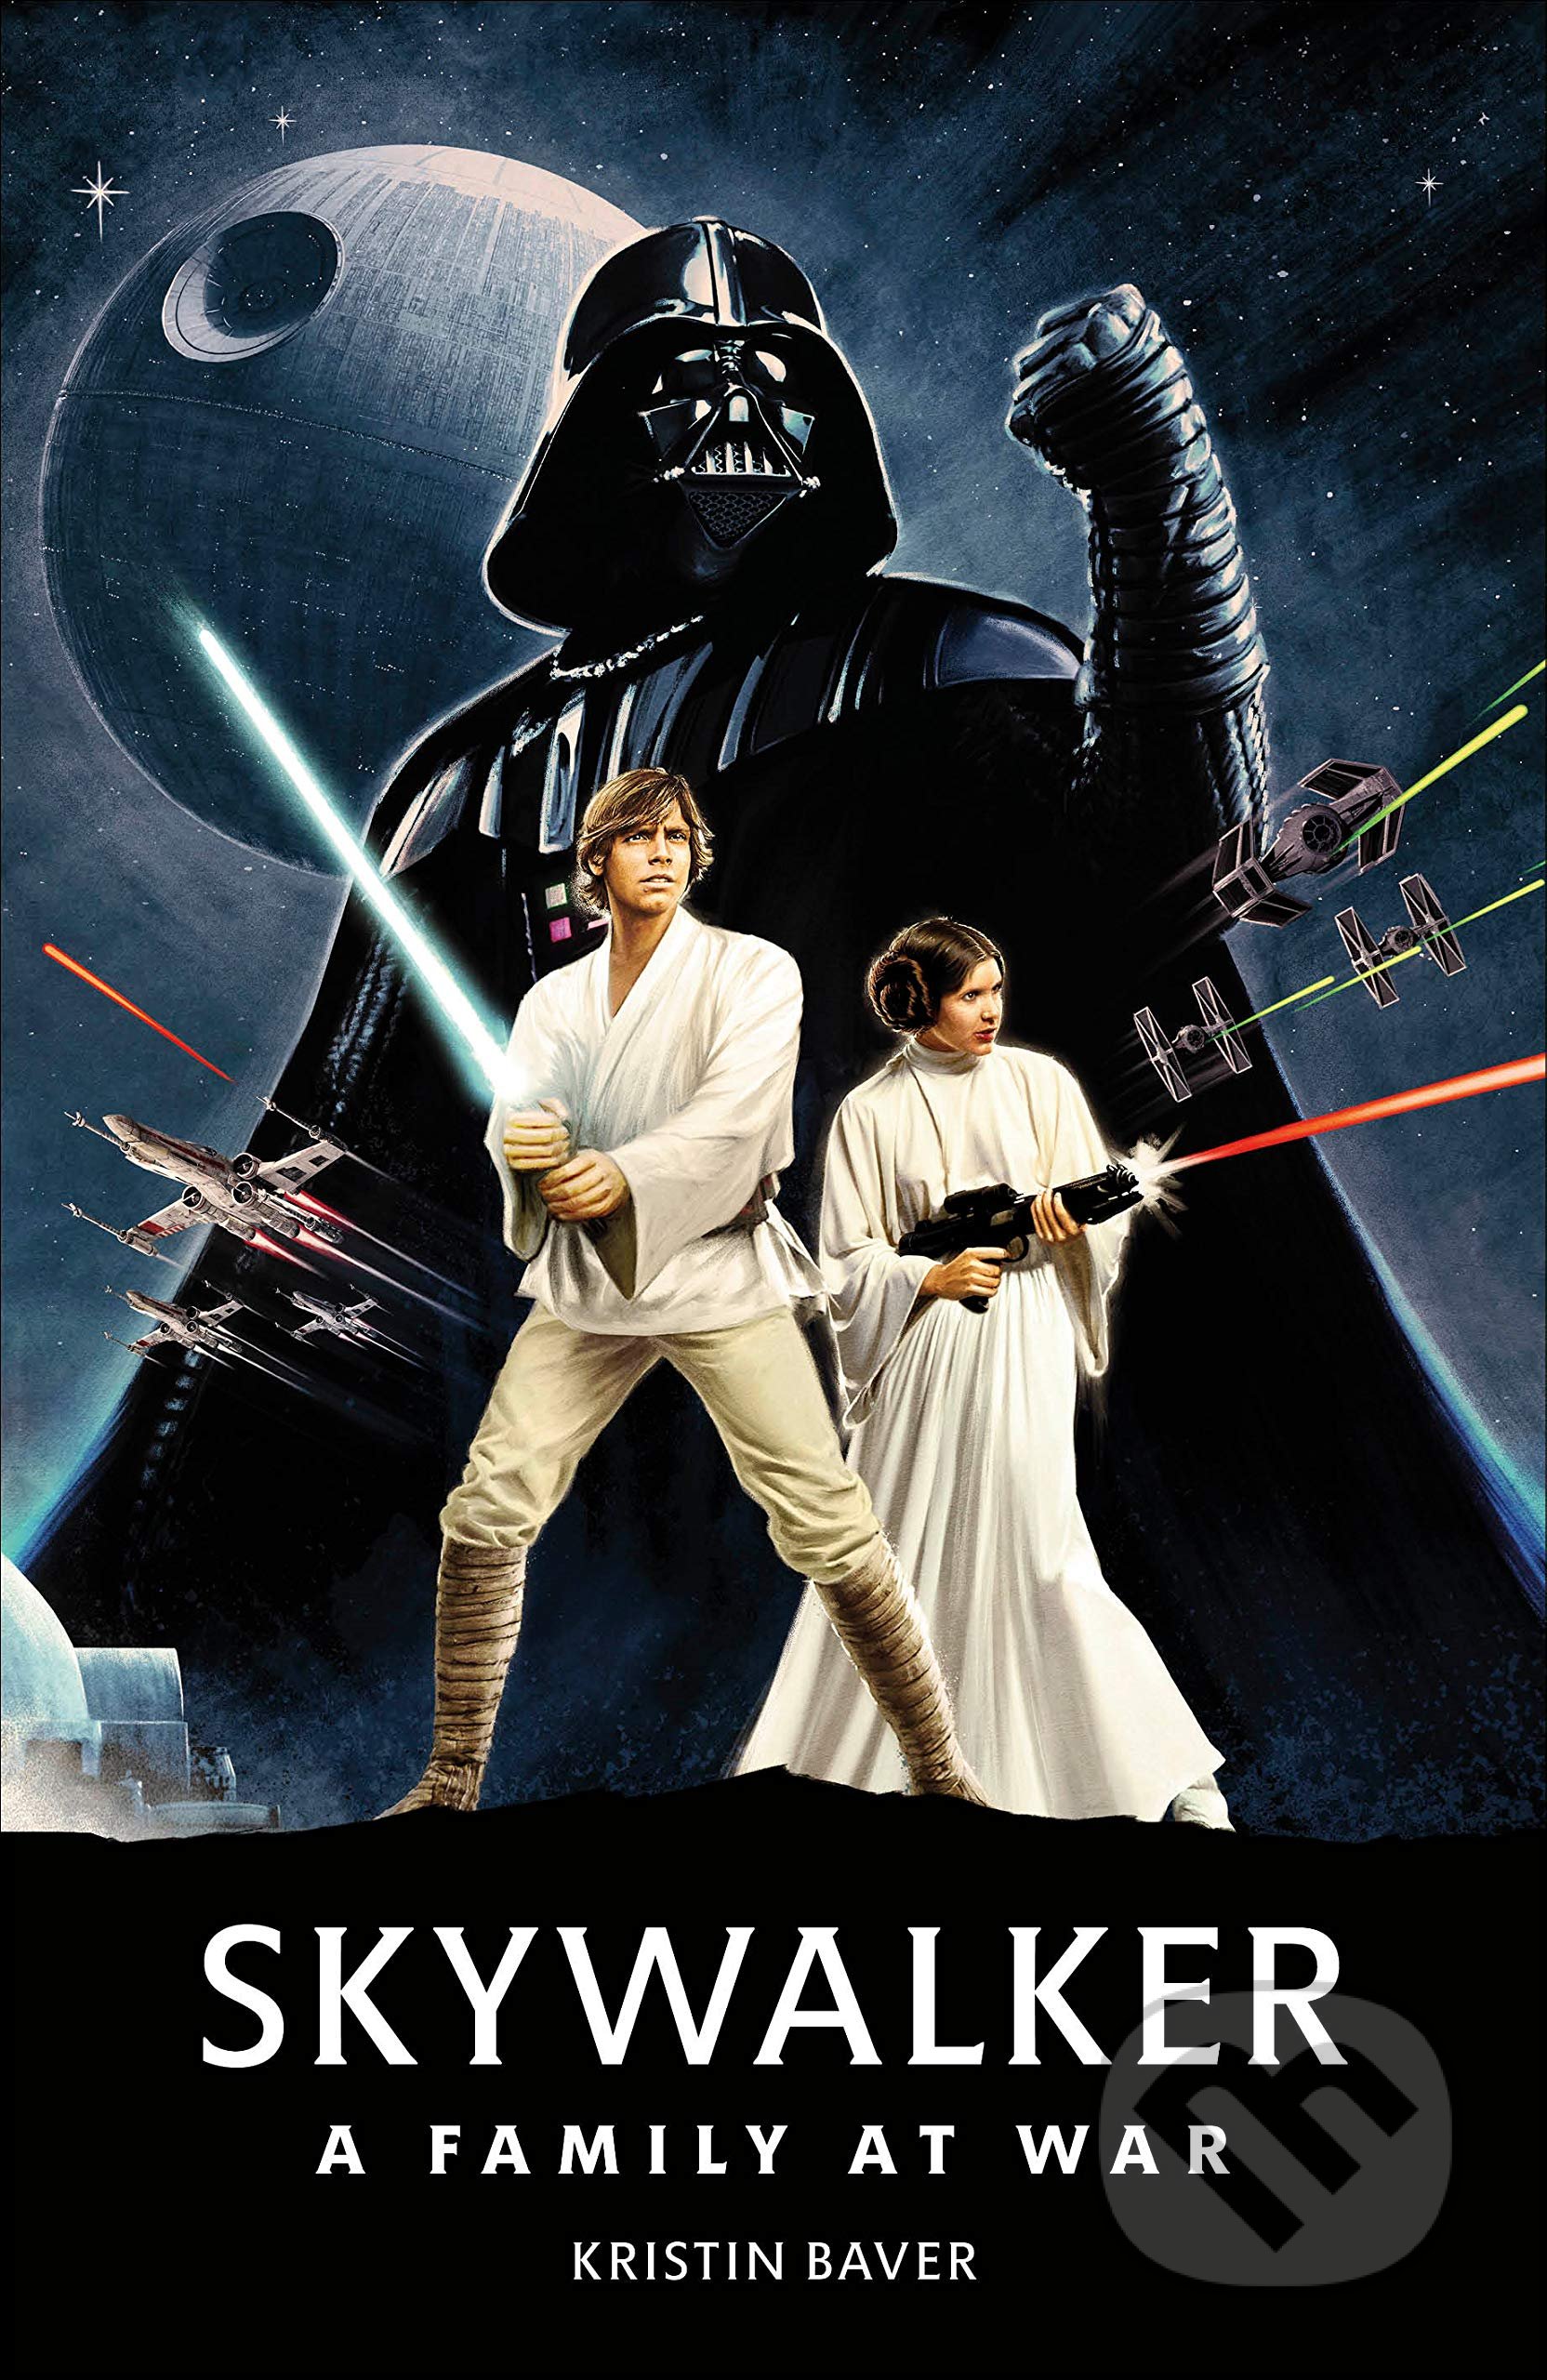 Star Wars Skywalker: A Family At War - Kristin Baver, Dorling Kindersley, 2021